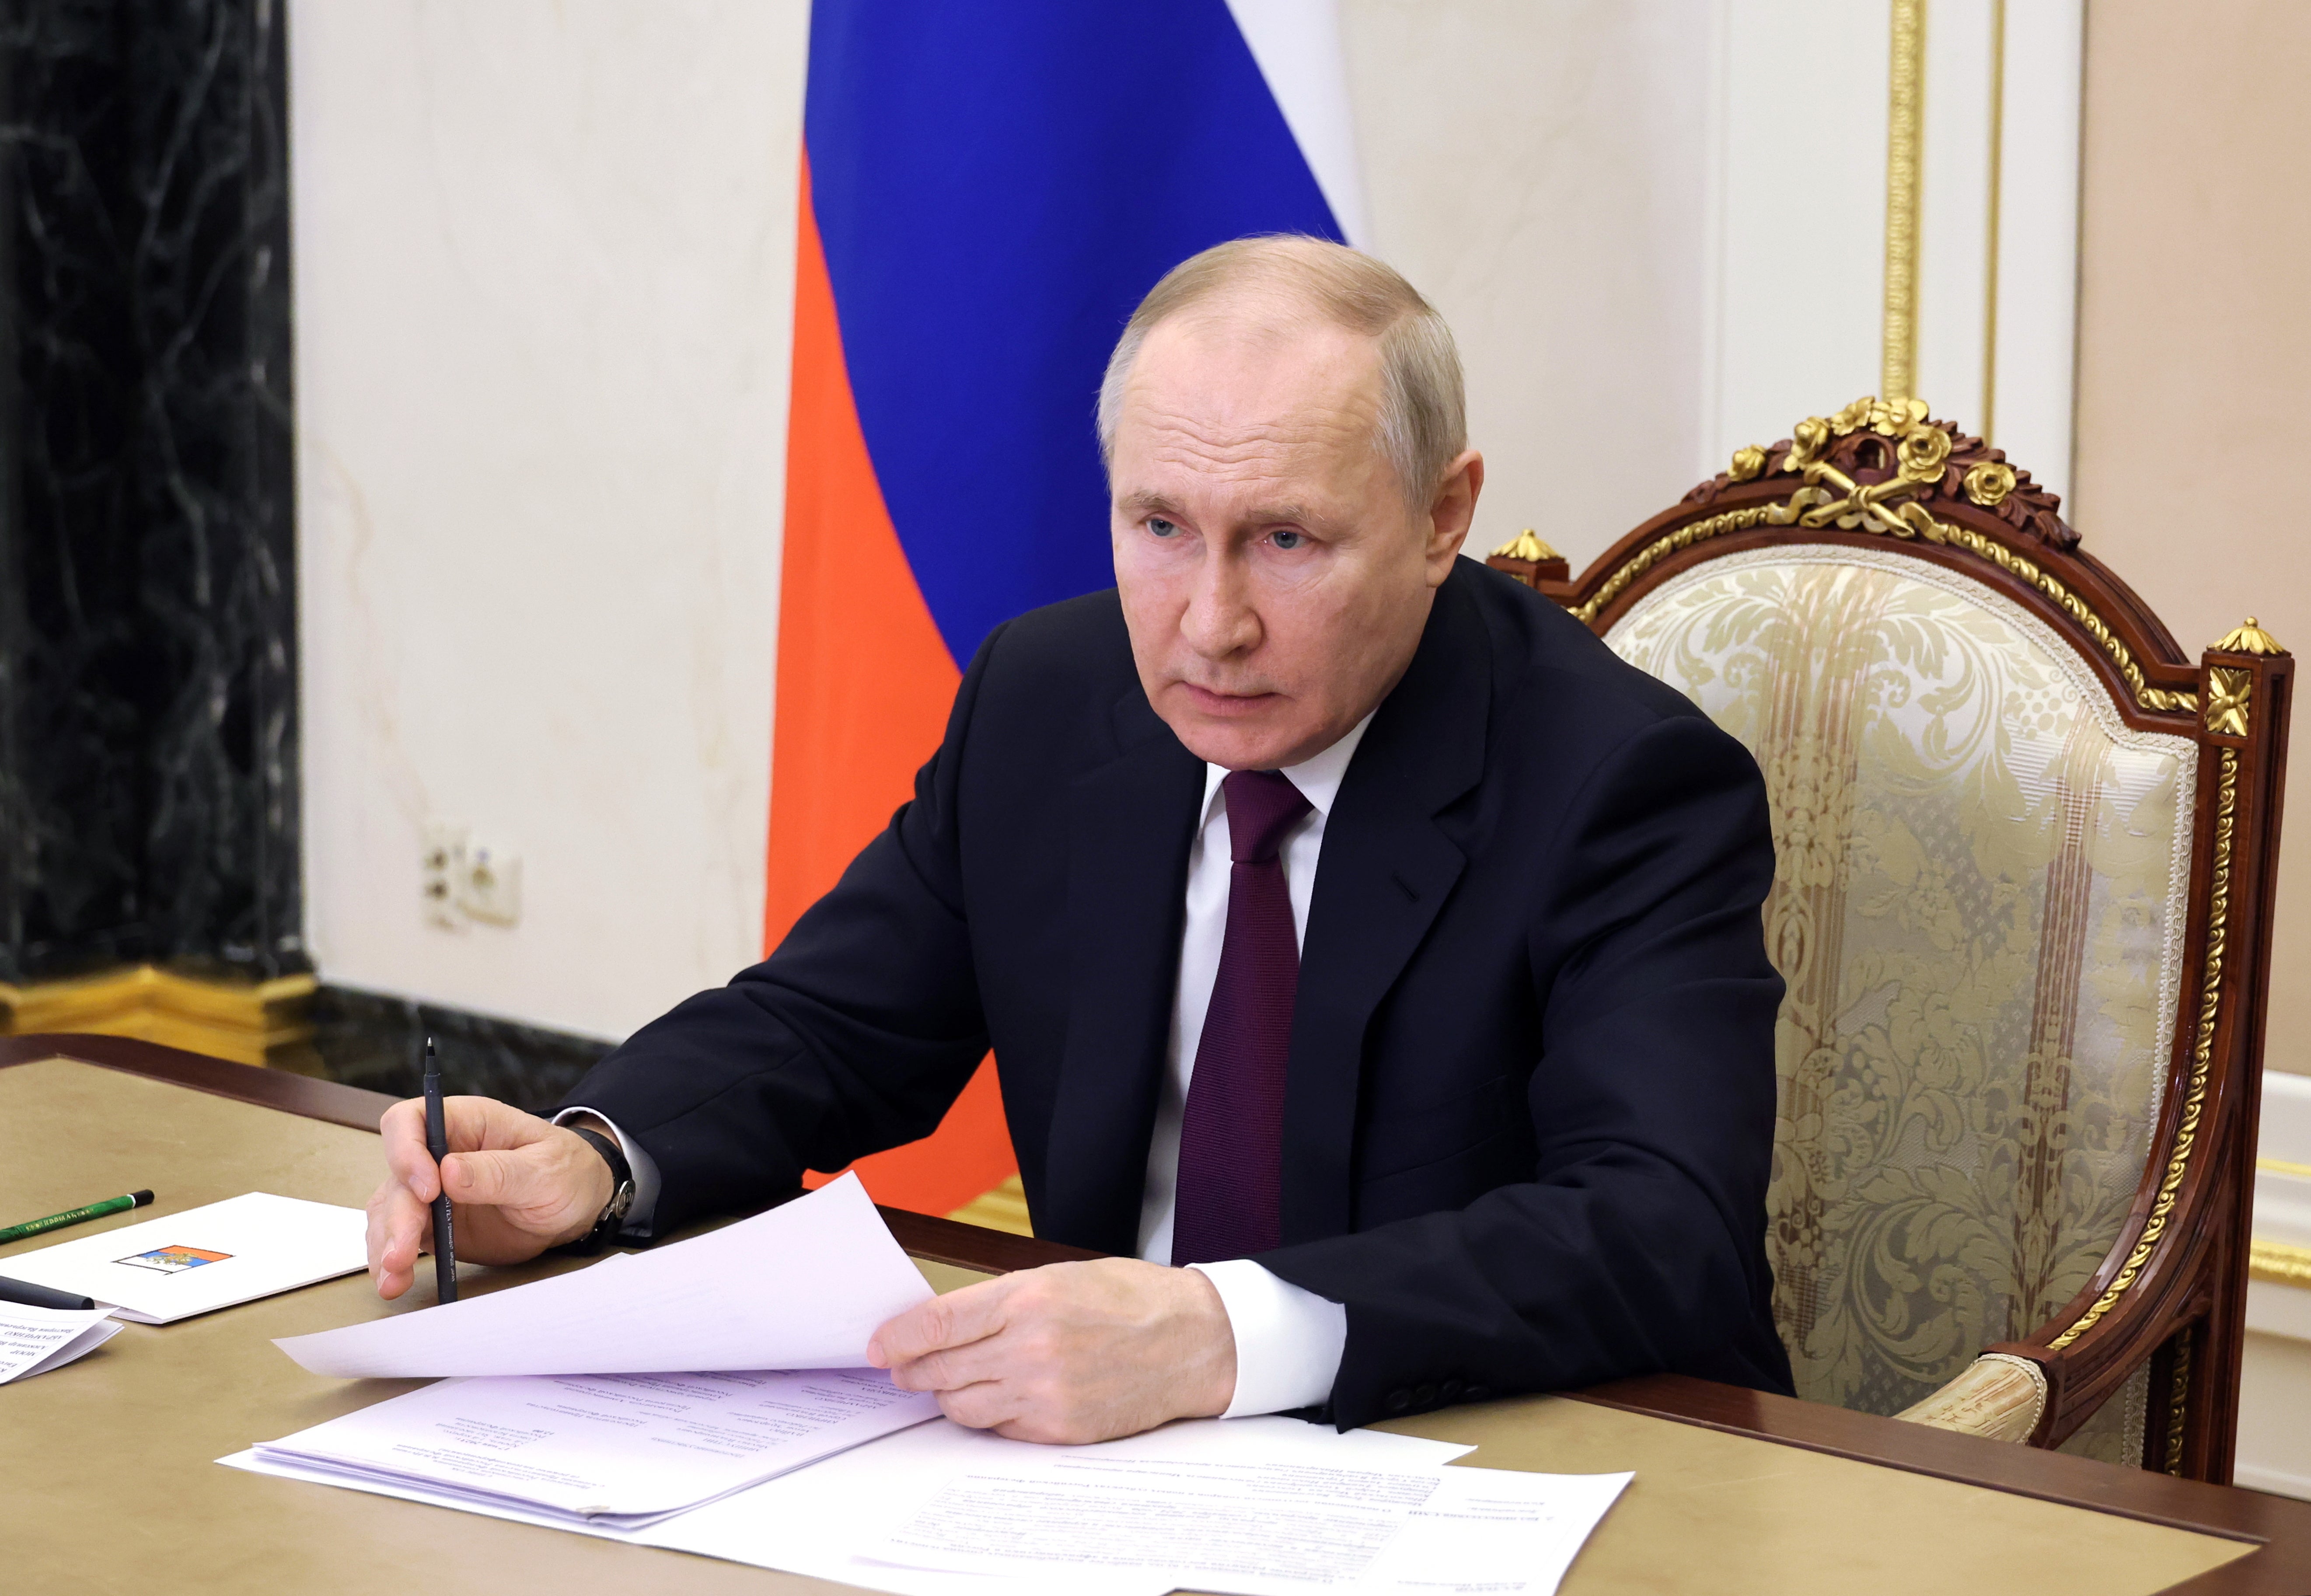 Putin đụng độ với bộ trưởng tài chính riêng về thiệt hại đối với nền kinh tế Nga do lệnh trừng phạt dầu mỏ